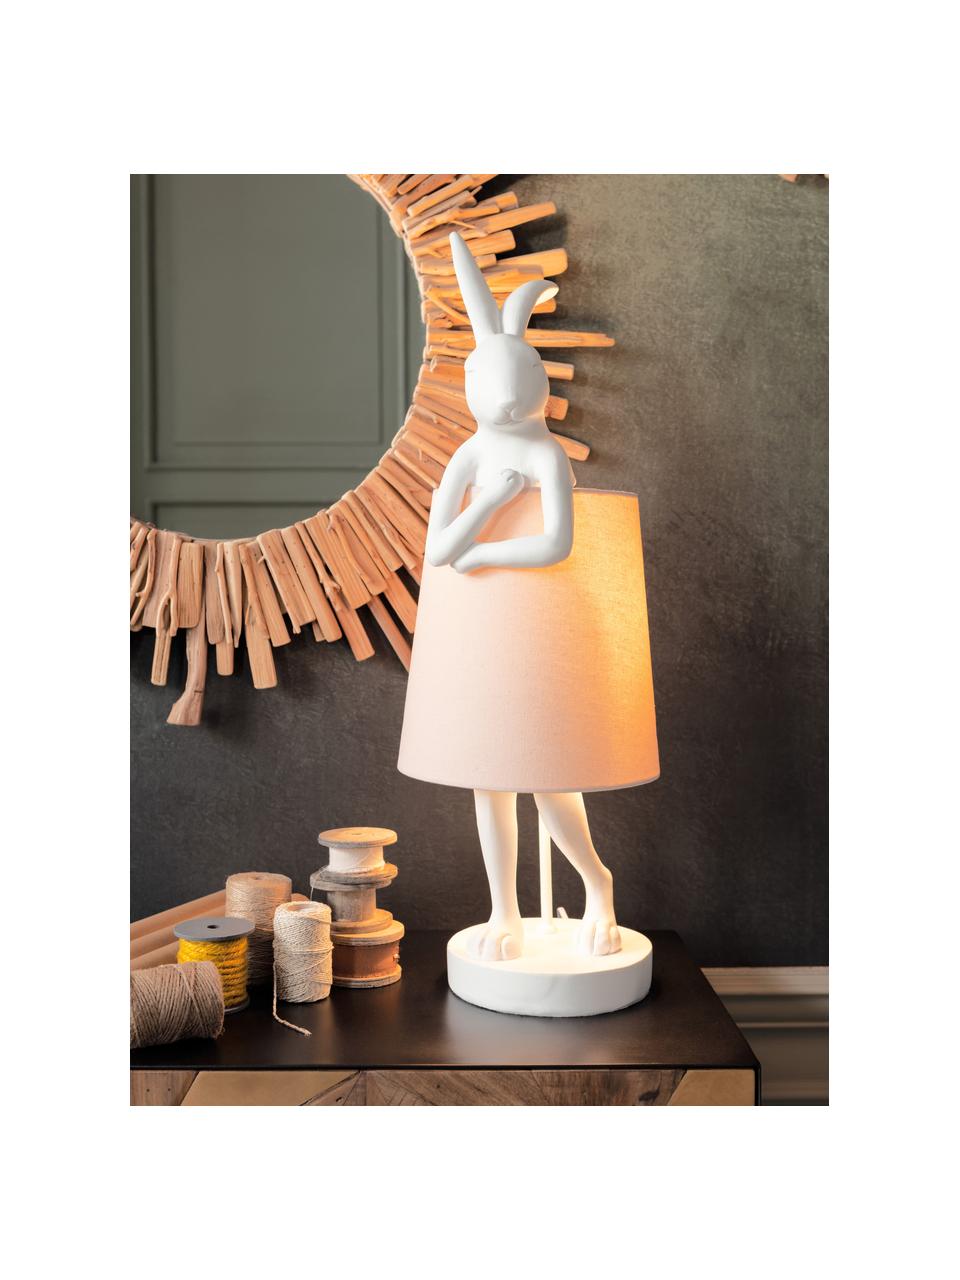 Grote design tafellamp Rabbit, Lampenkap: linnen, Lampvoet: polyresin, Stang: gepoedercoat staal, Wit, lichtroze, Ø 23 x H 68 cm